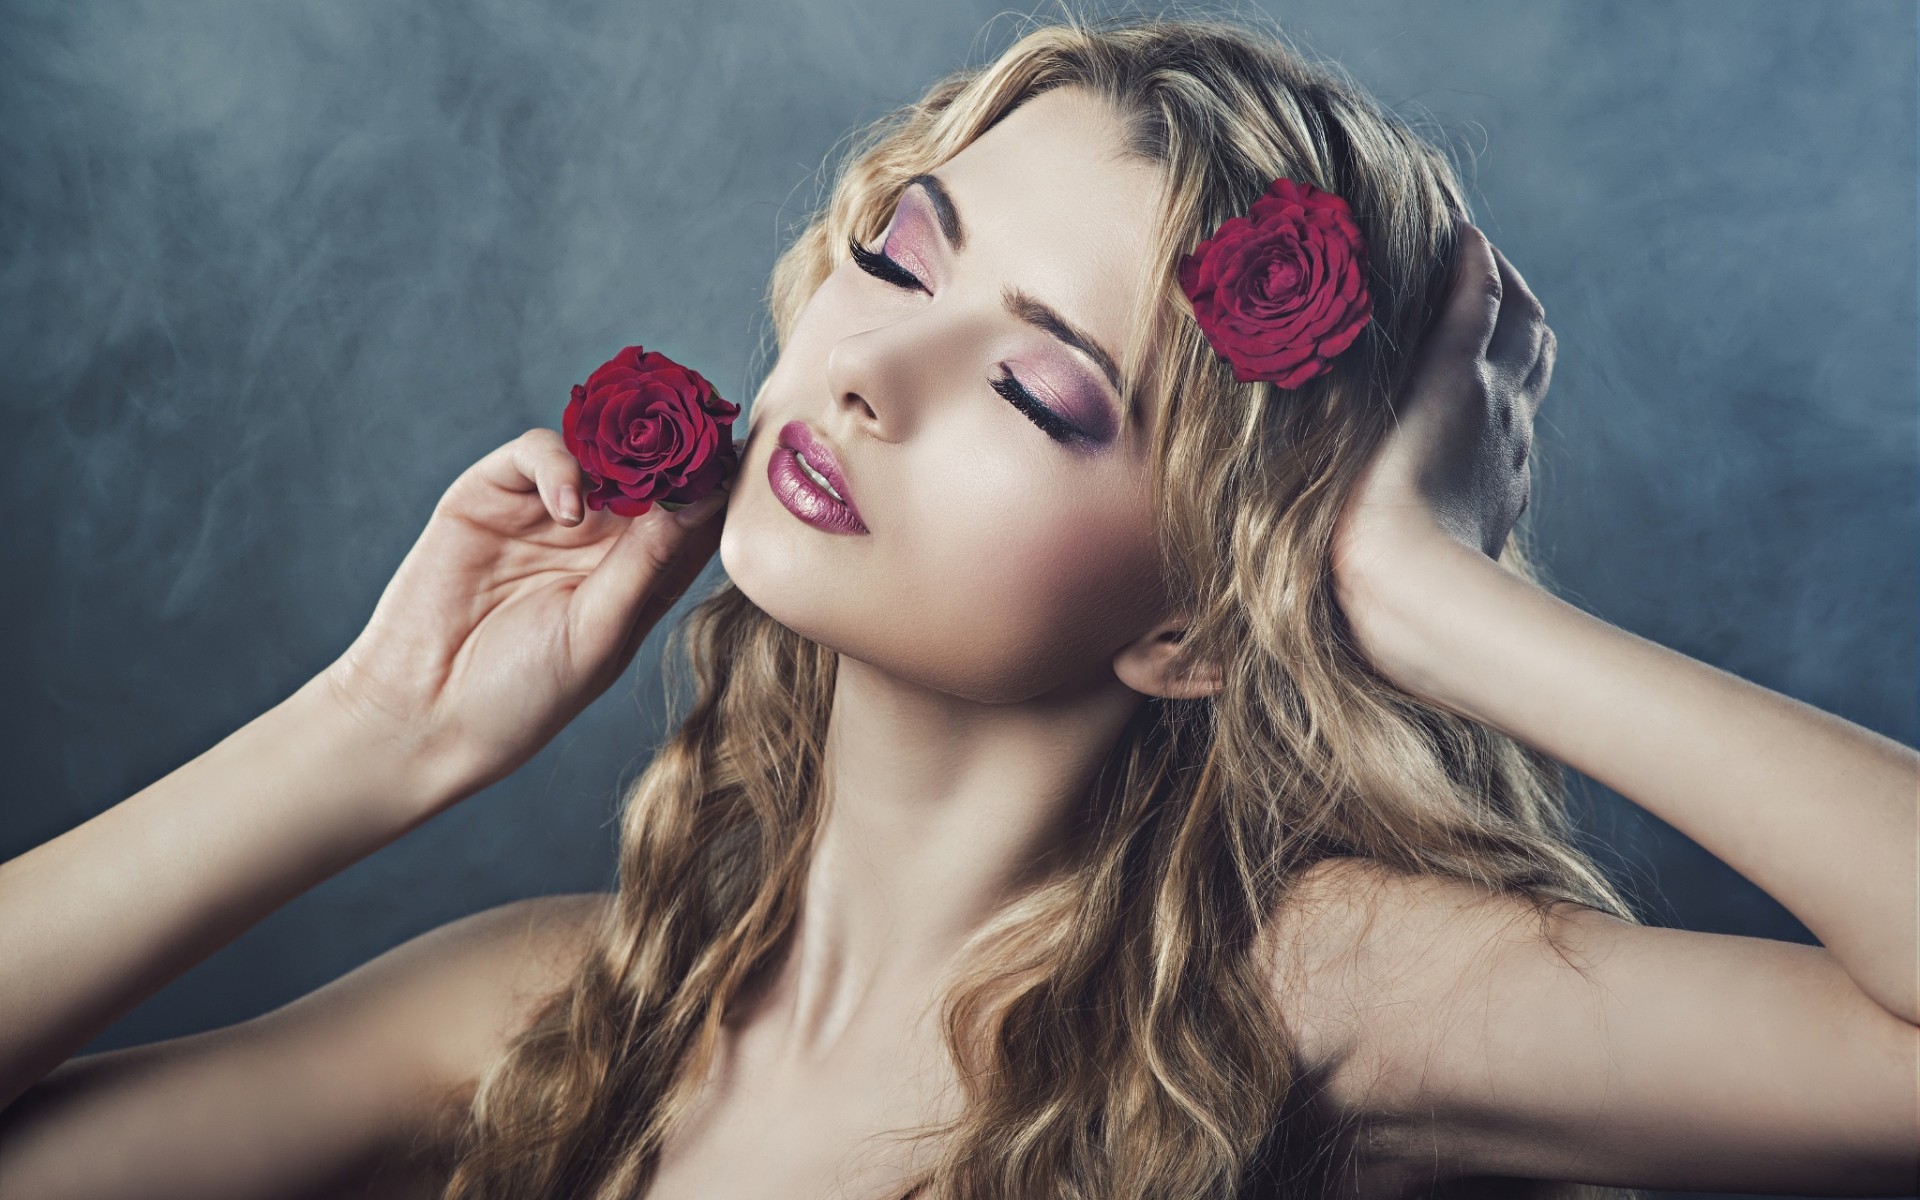 Бесплатное фото Julia Sariy позирует с розами в волосах